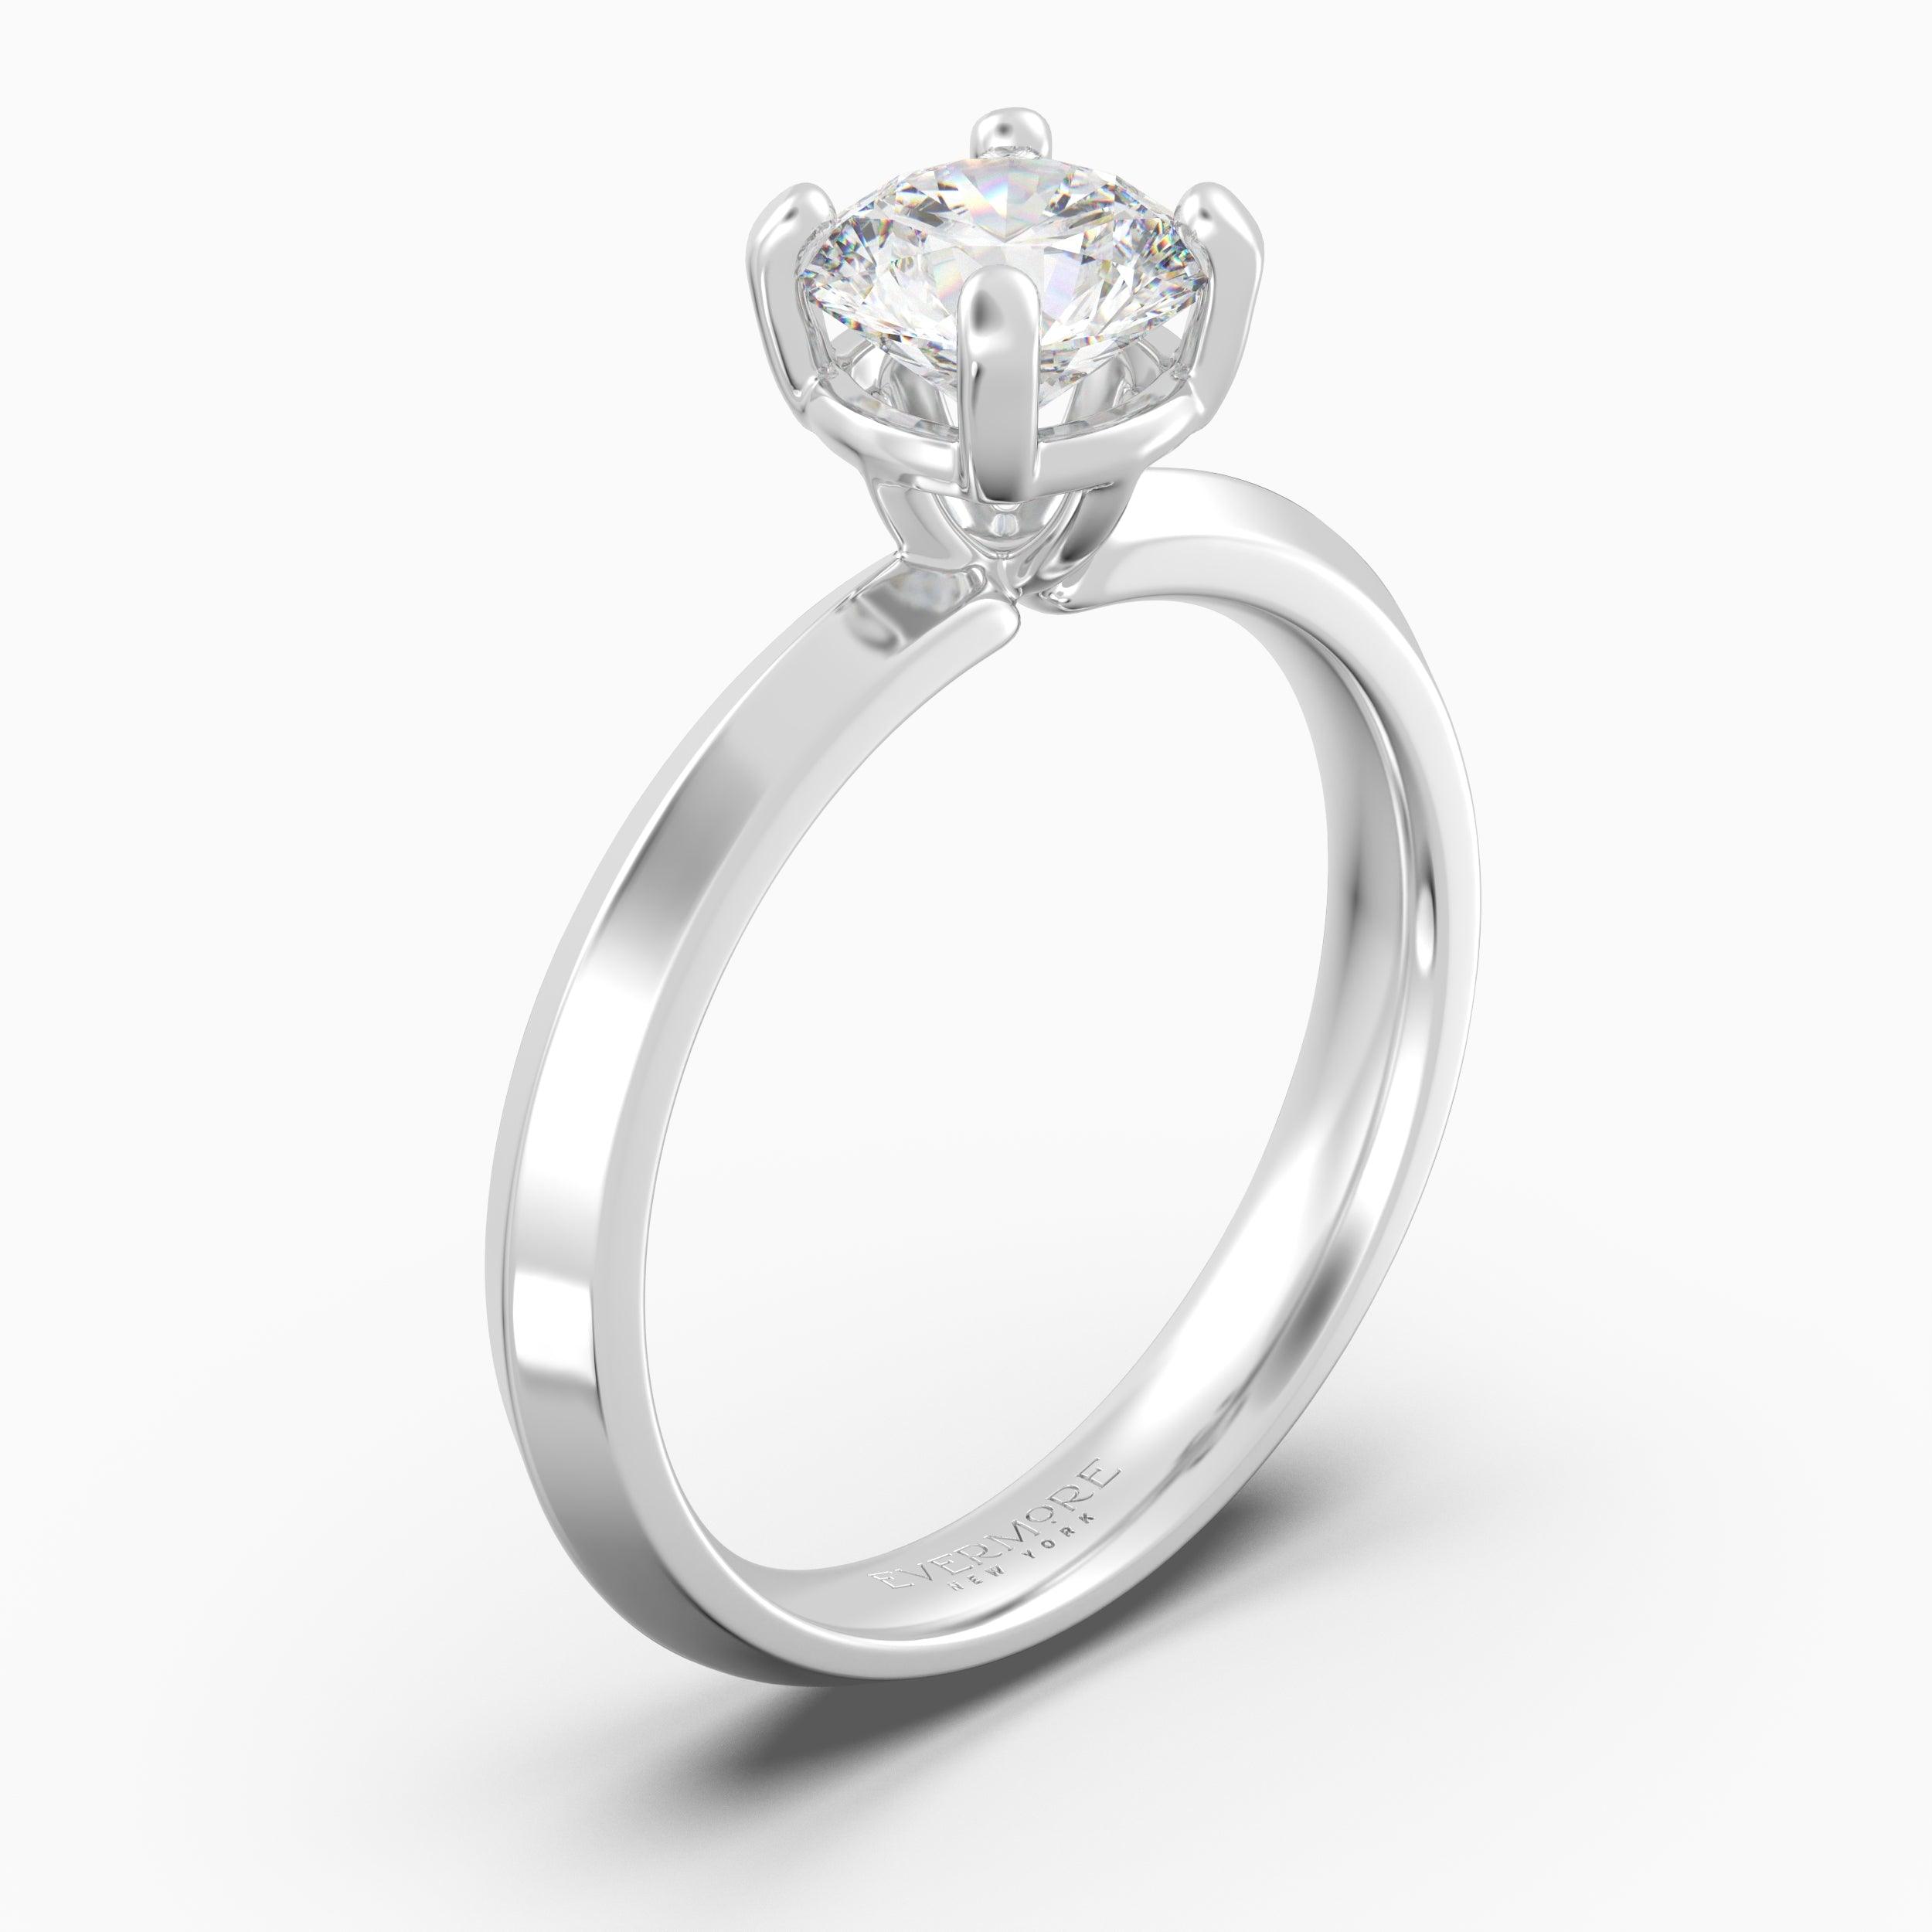 The Elegante Round Brilliant - White Gold / 0.5 ct - Evermore Diamonds